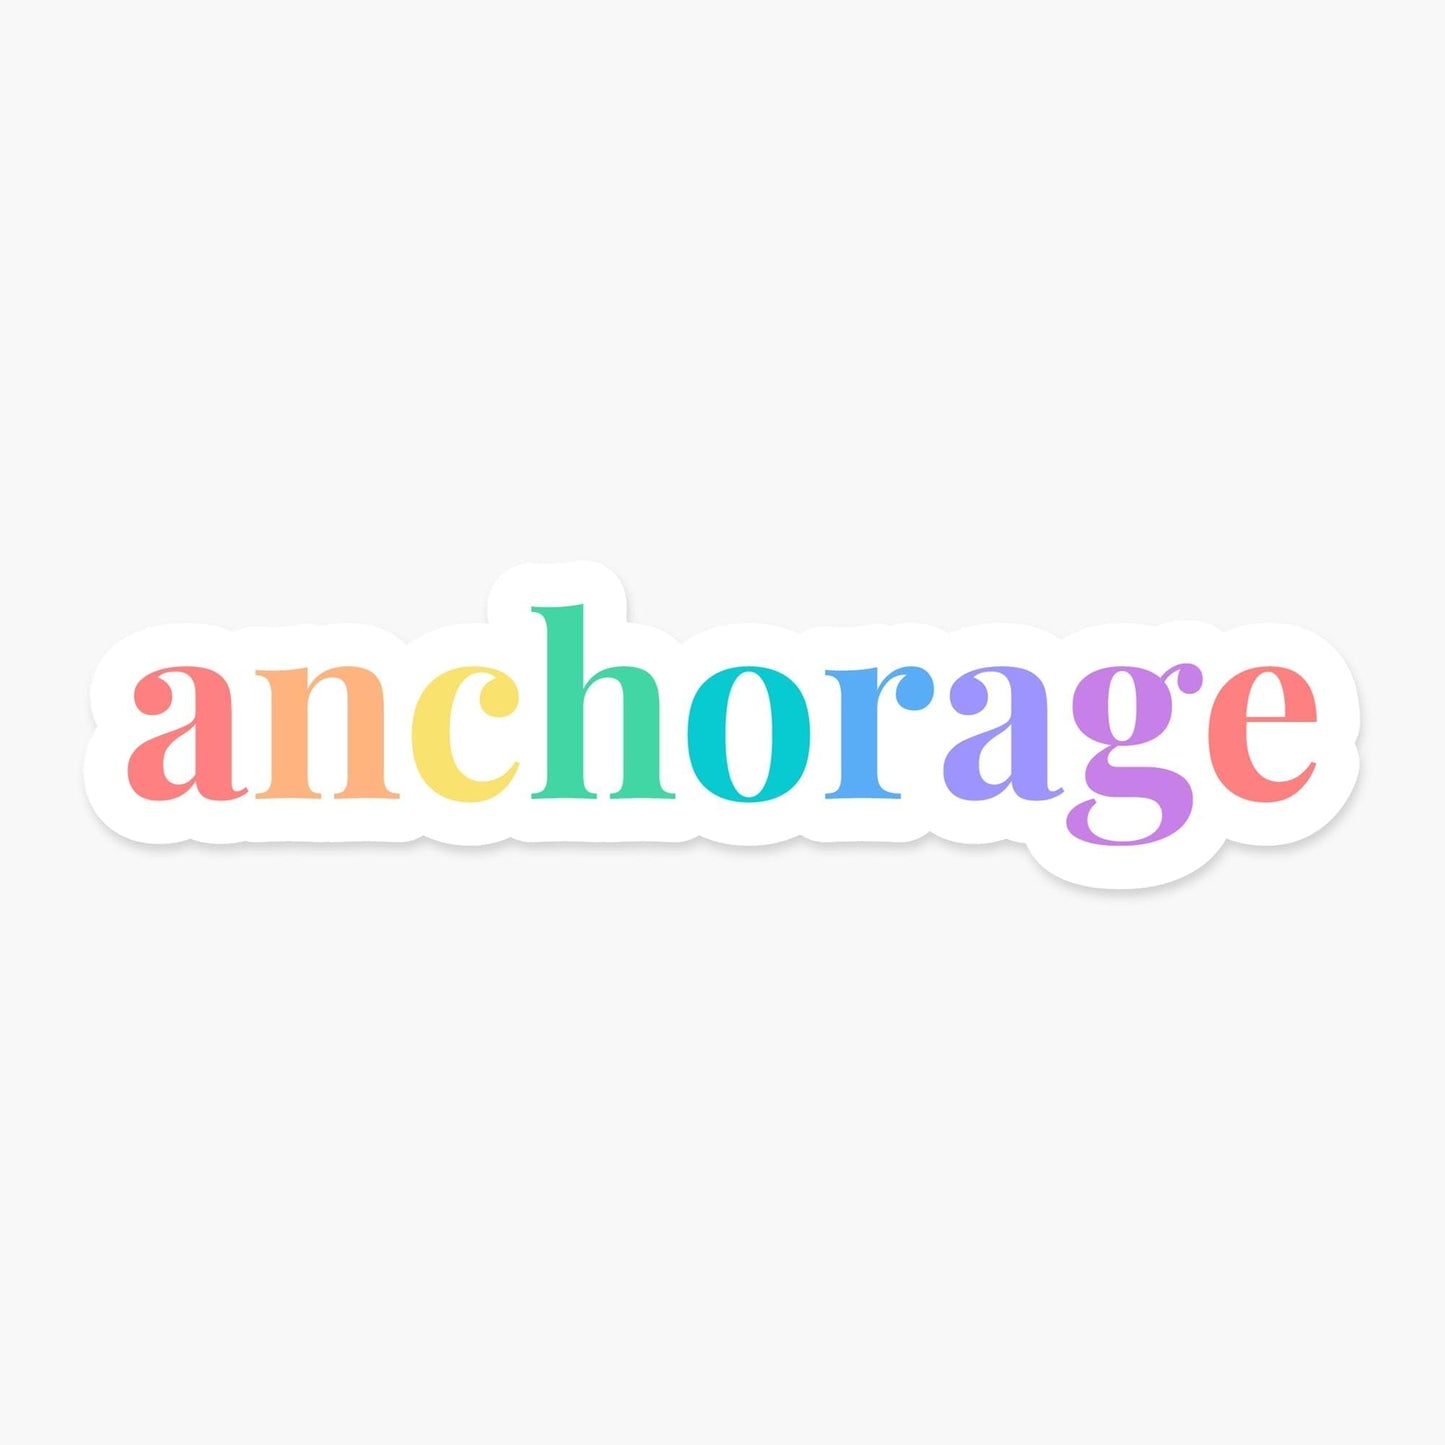 Anchorage, Alaska Sticker